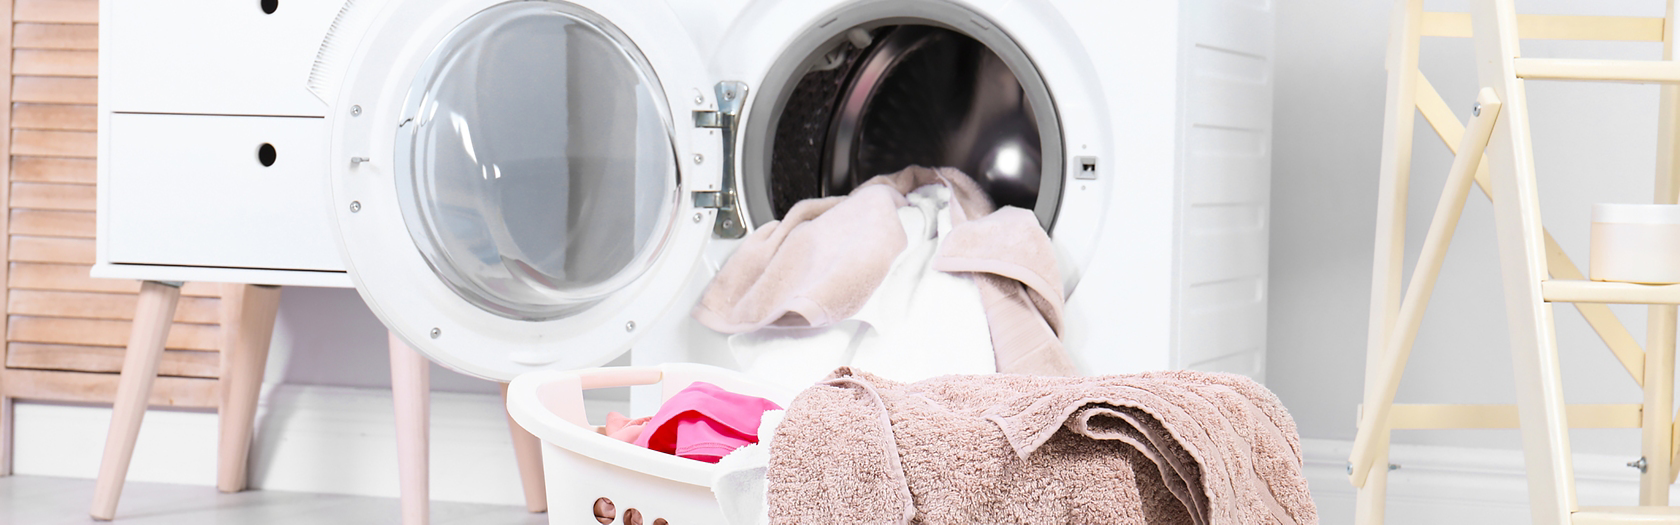 Wasche Sortieren Die Besten Tipps Tricks Frag Team Clean